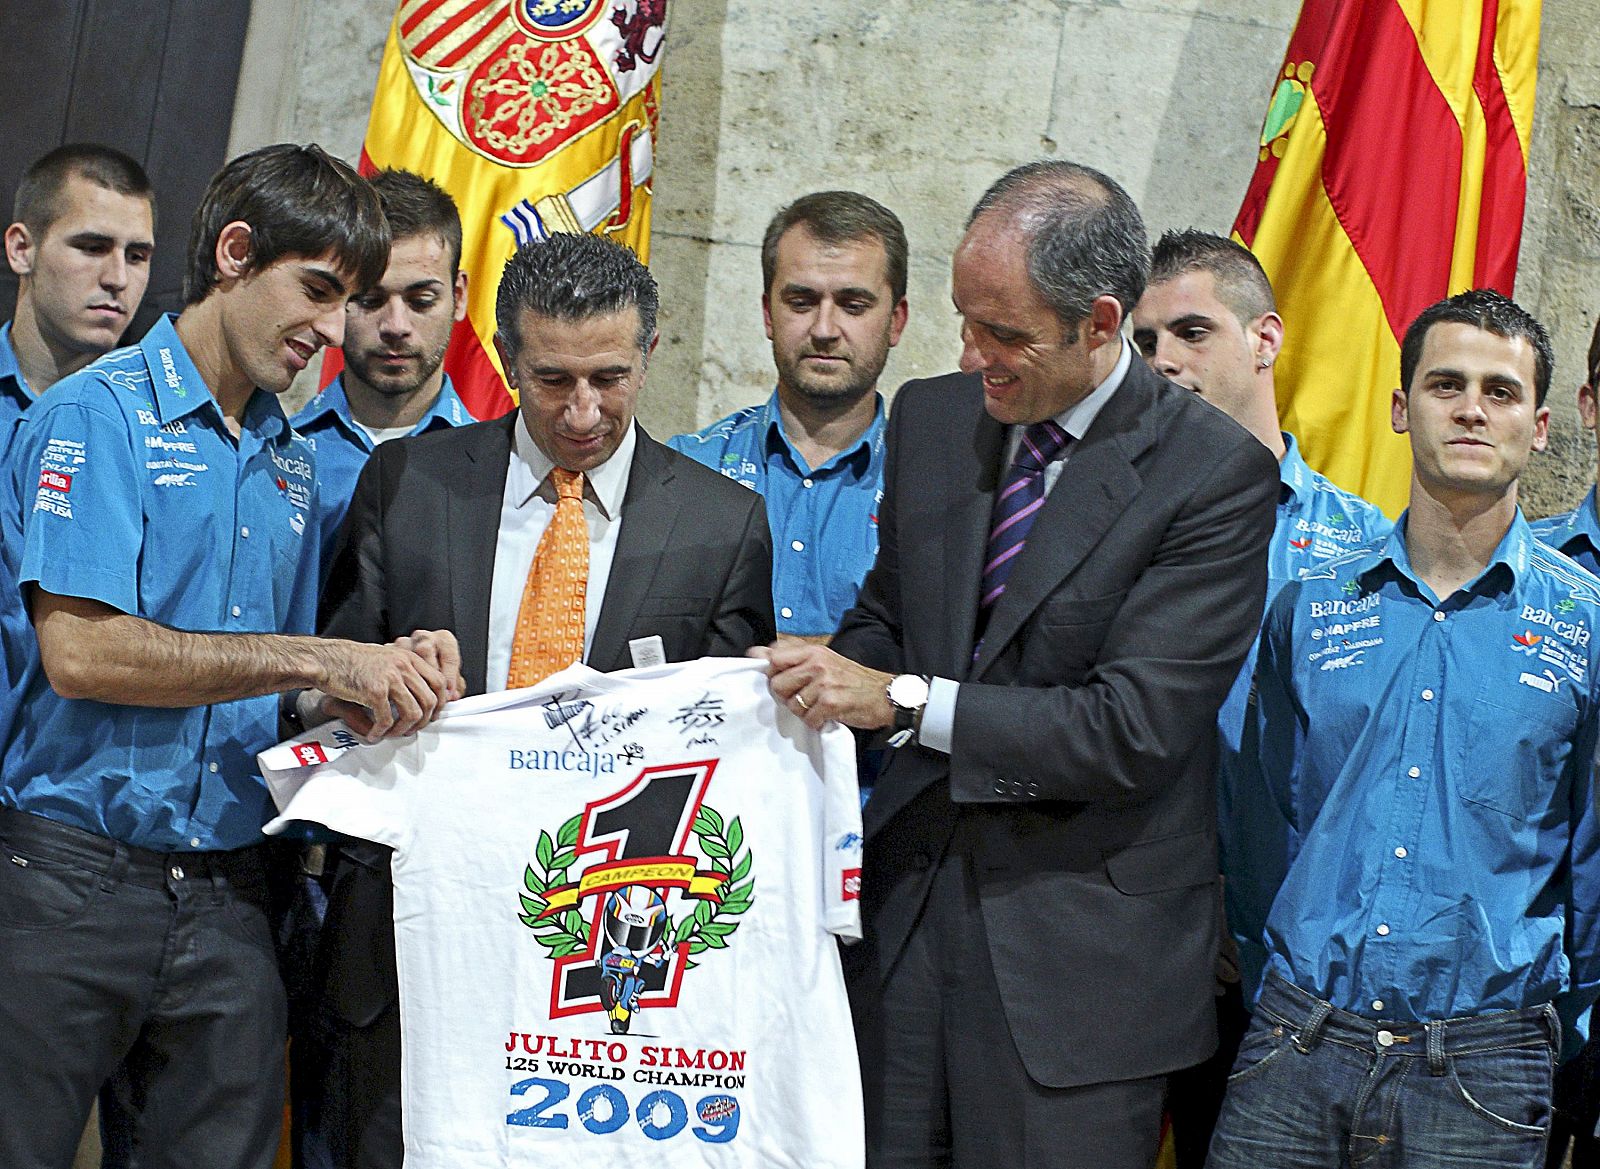 El president de la Generalitat, Francisco Camps, recibe de manos del piloto Julián Simón, campeón del mundo 2009 de 125 cc., y su director de equipo el ex piloto Jorge Martínez "Aspar", una camiseta conmemorativa.